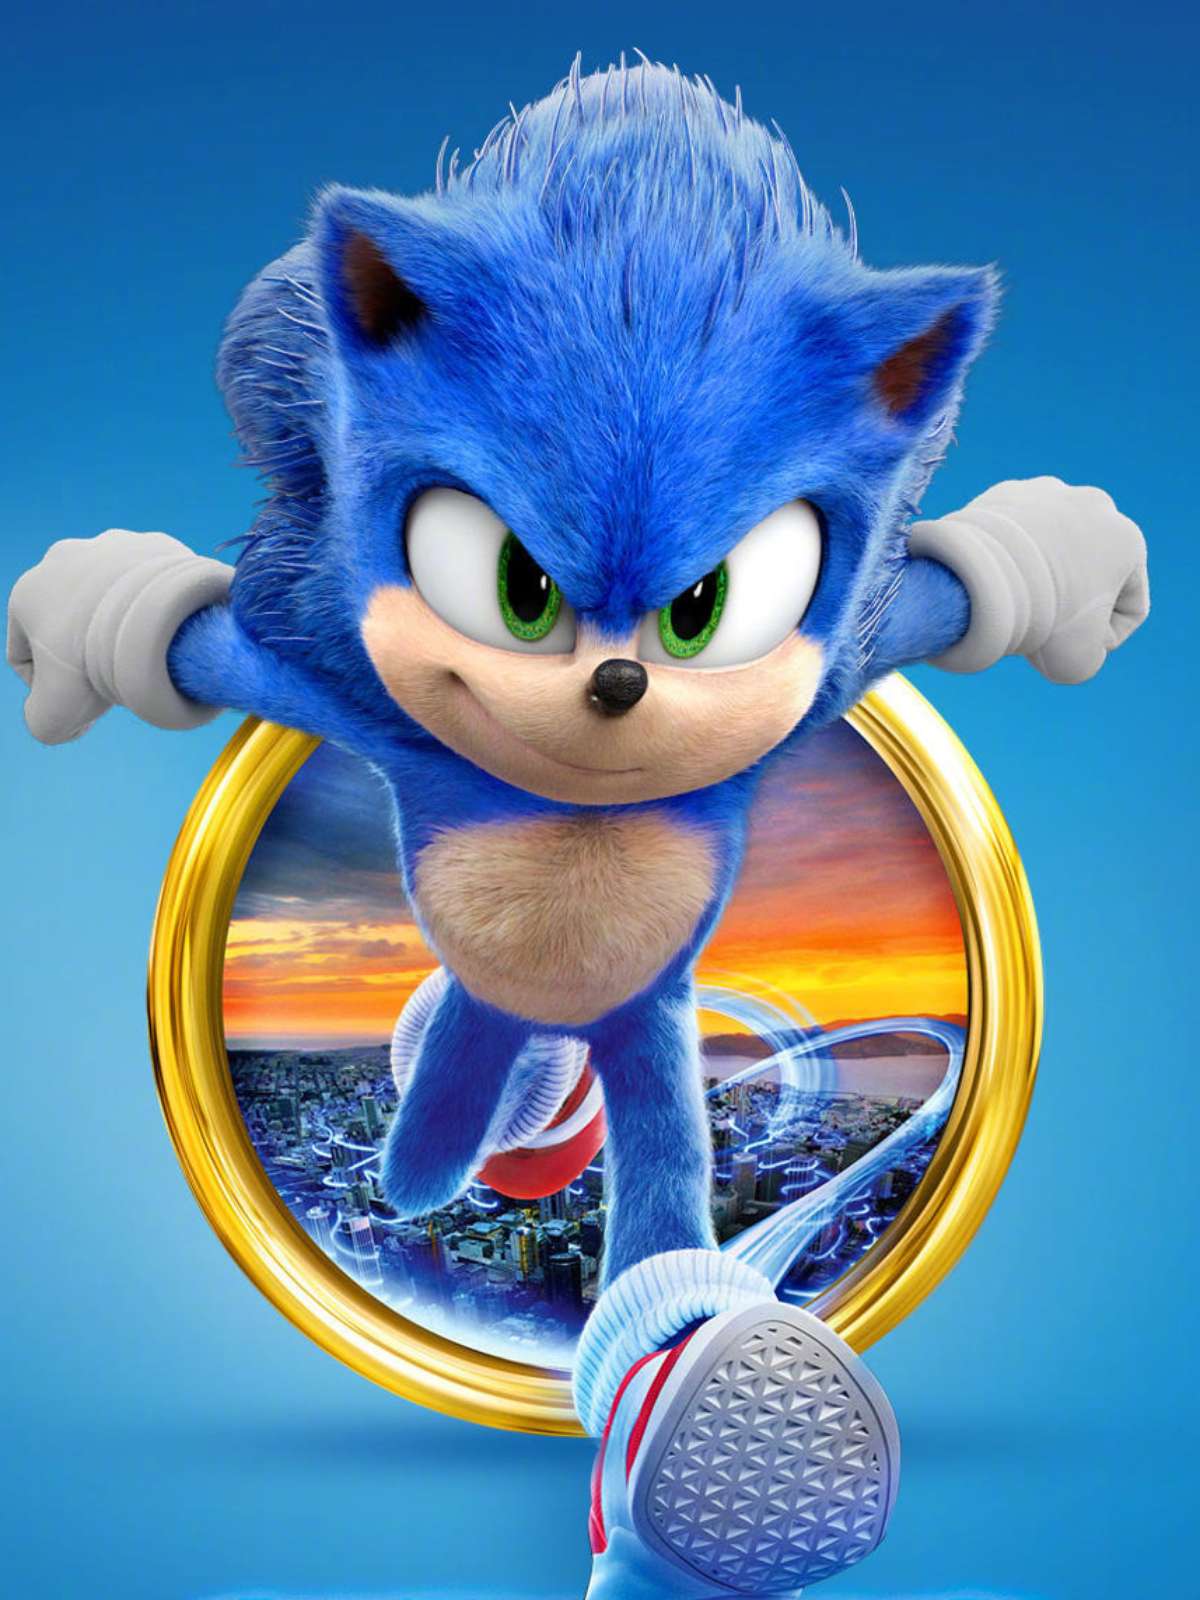 Sonic 2: O Filme é uma ótima continuação para o filme de 2020